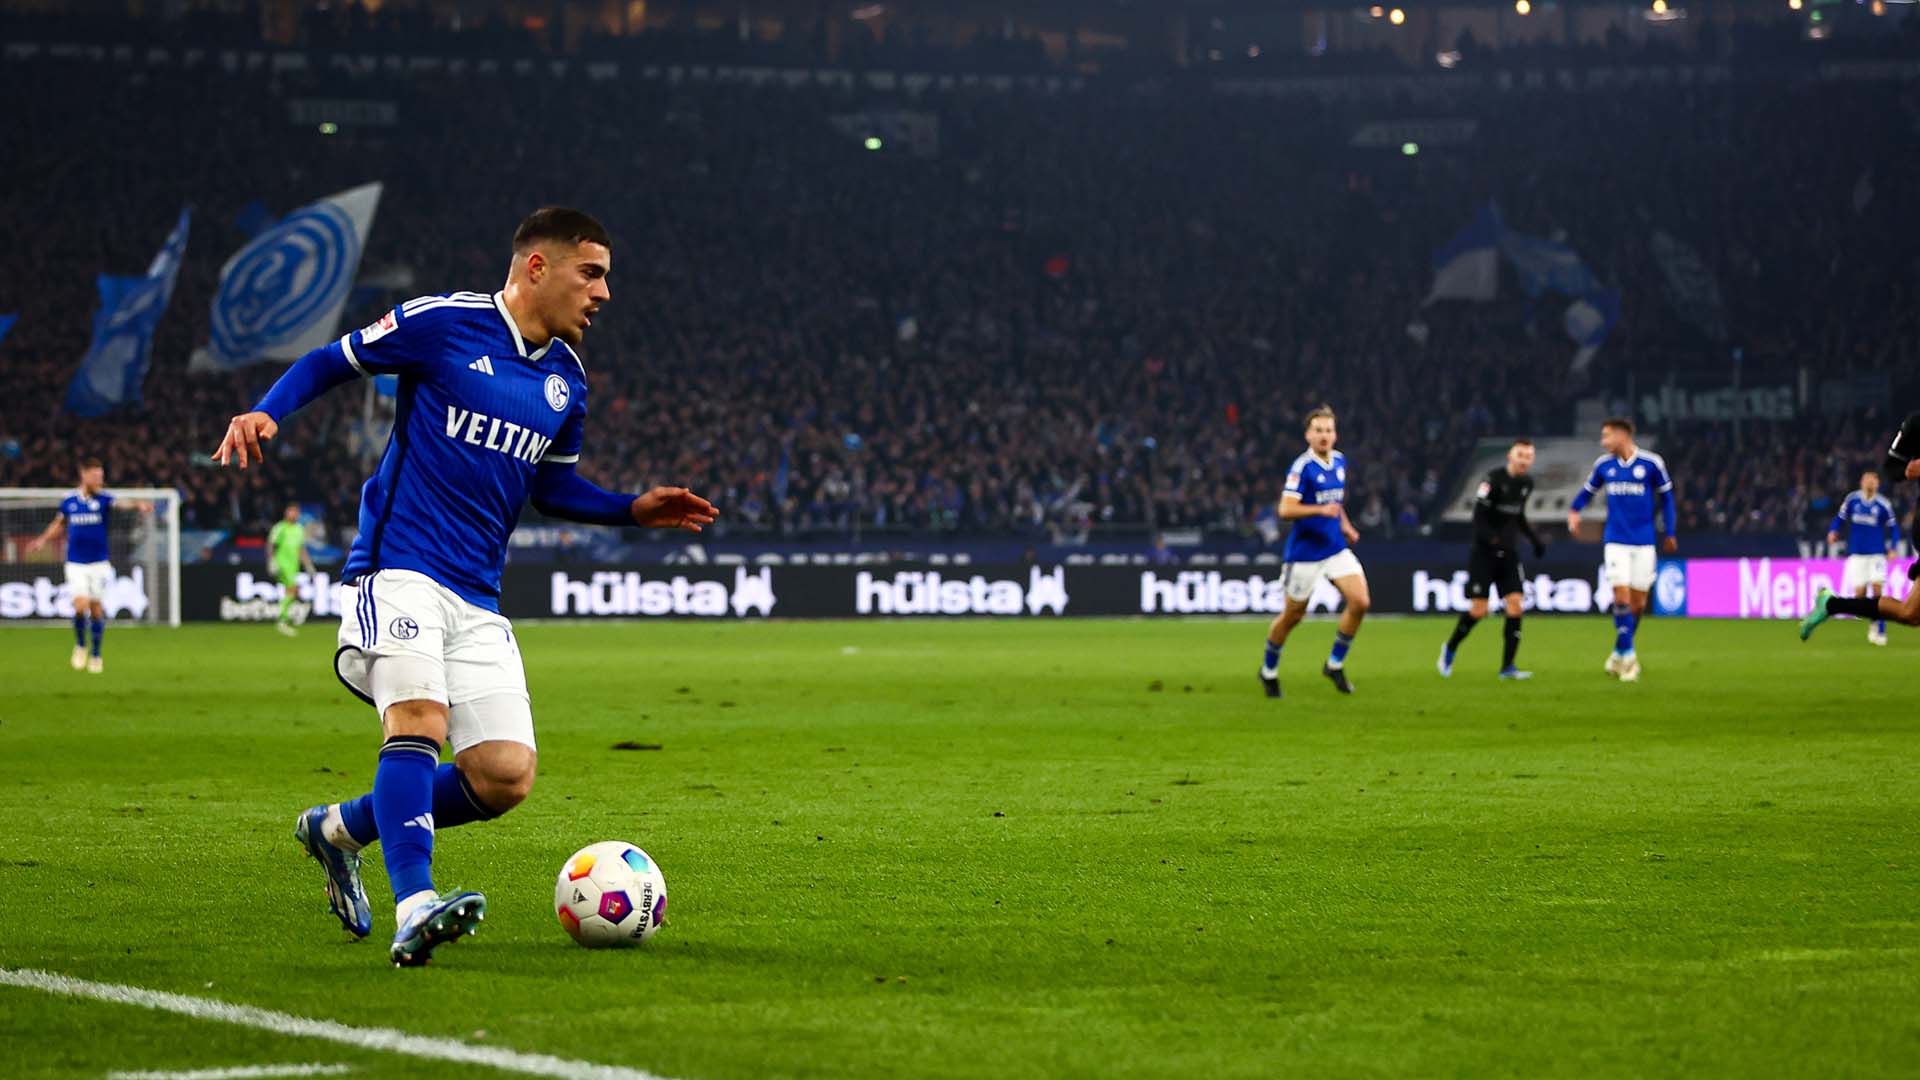 En segunda, el Schalke percibe alrededor de 20 millones en derechos televisivos, una cantidad que disminuiría radicalmente teniendo en cuenta que en tercera se reparten tan sólo 23 millones entre los 18 clubes. 